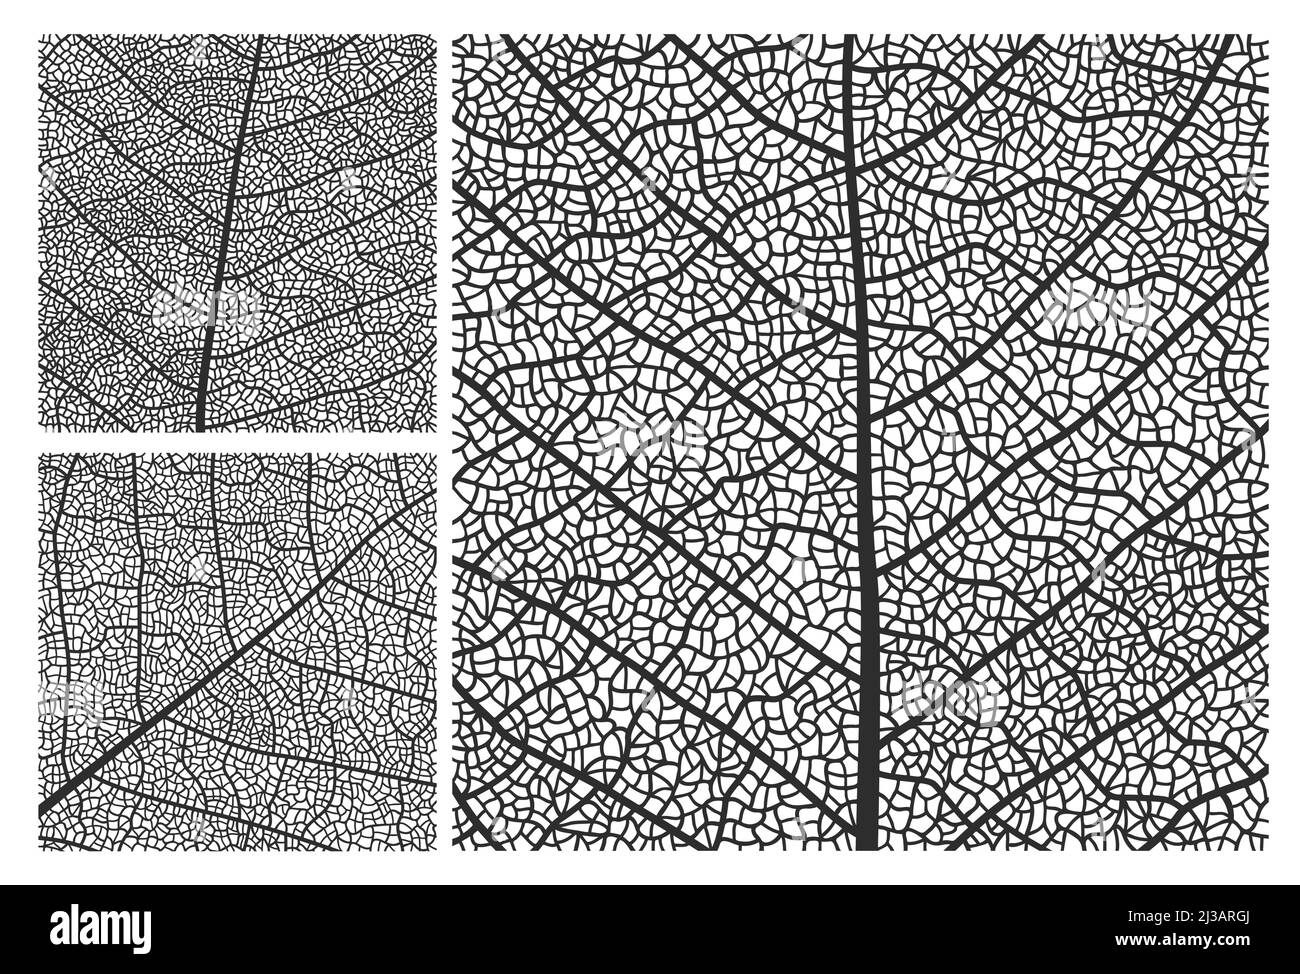 Fond de motif de texture des feuilles avec nervures et cellules. Ensemble de feuilles de plante à gros plan avec ornements monochromes de feuilles d'érable, de bouleau ou de noyer structure en mosaïque, toile de fond abstraite nature Illustration de Vecteur